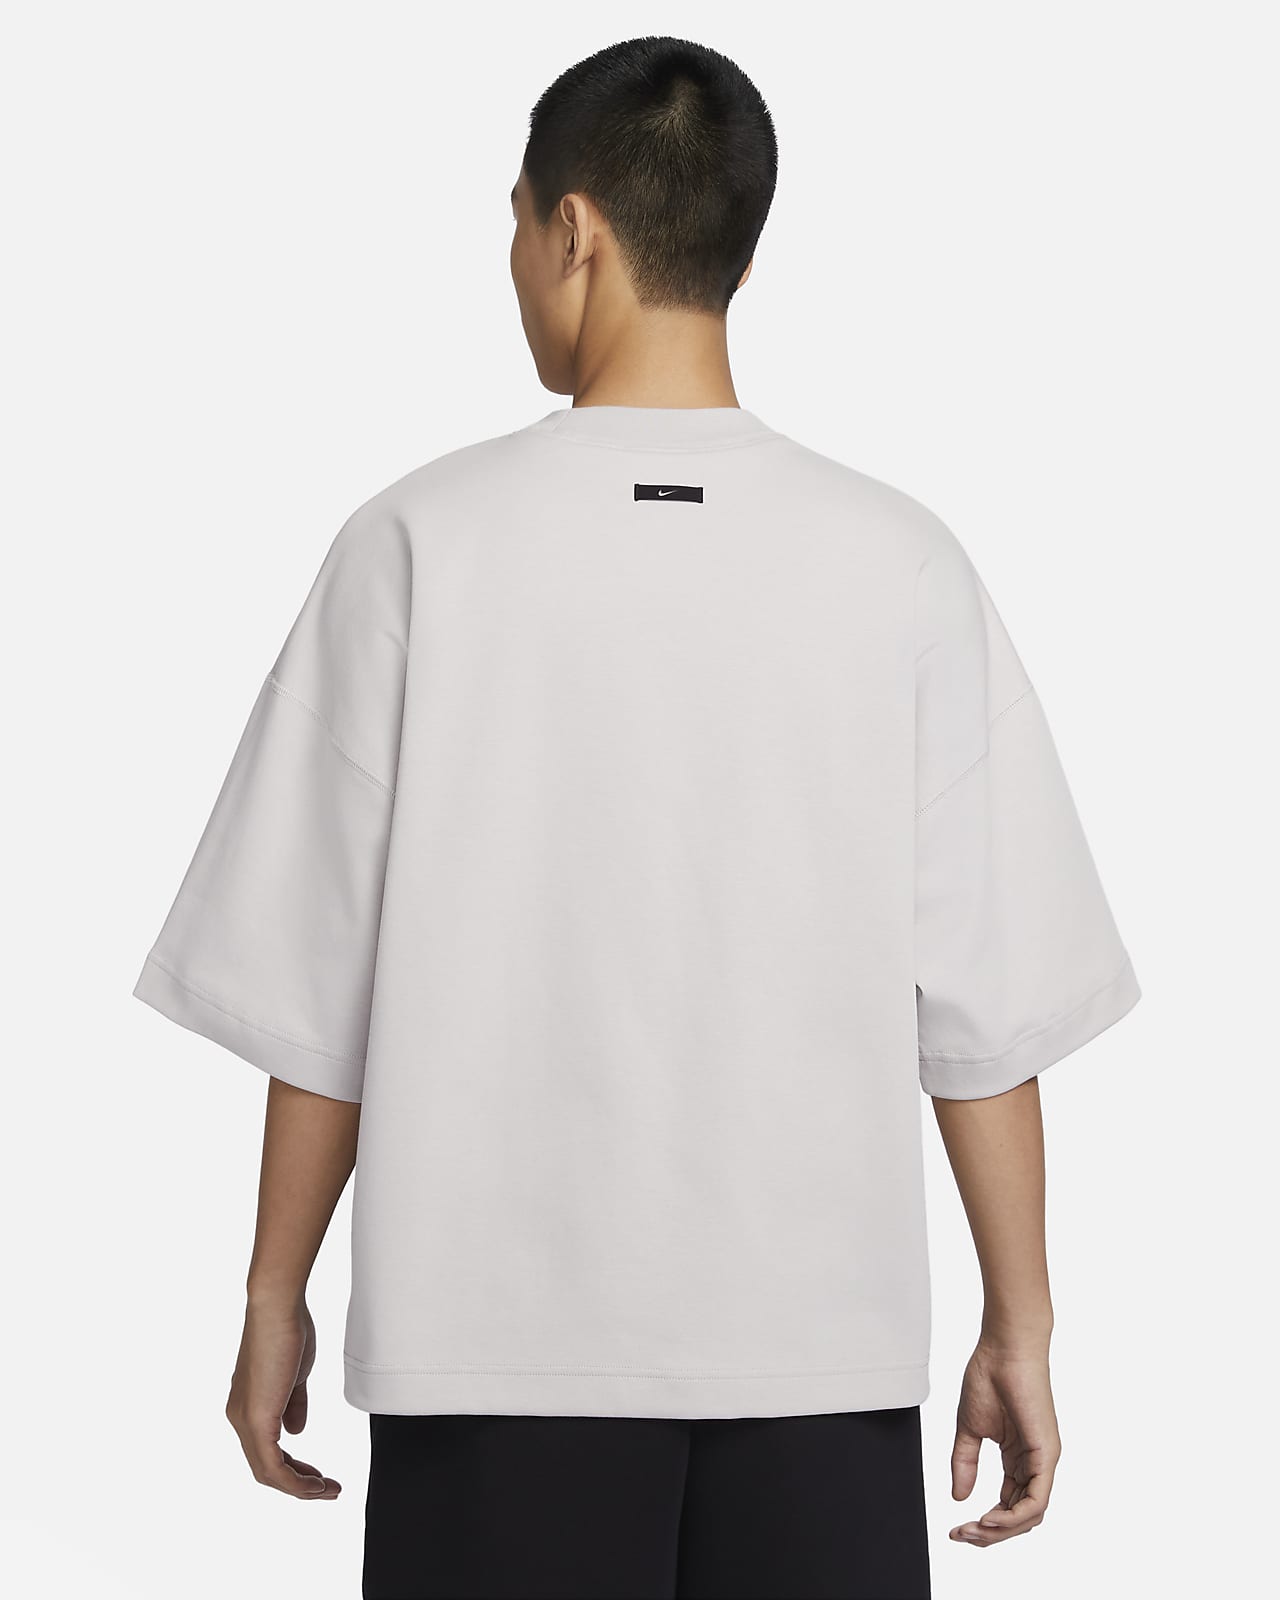 Nike Sportswear Tech Fleece Re-Imagined Men's Oversized Short-Sleeve Top.  Nike ID